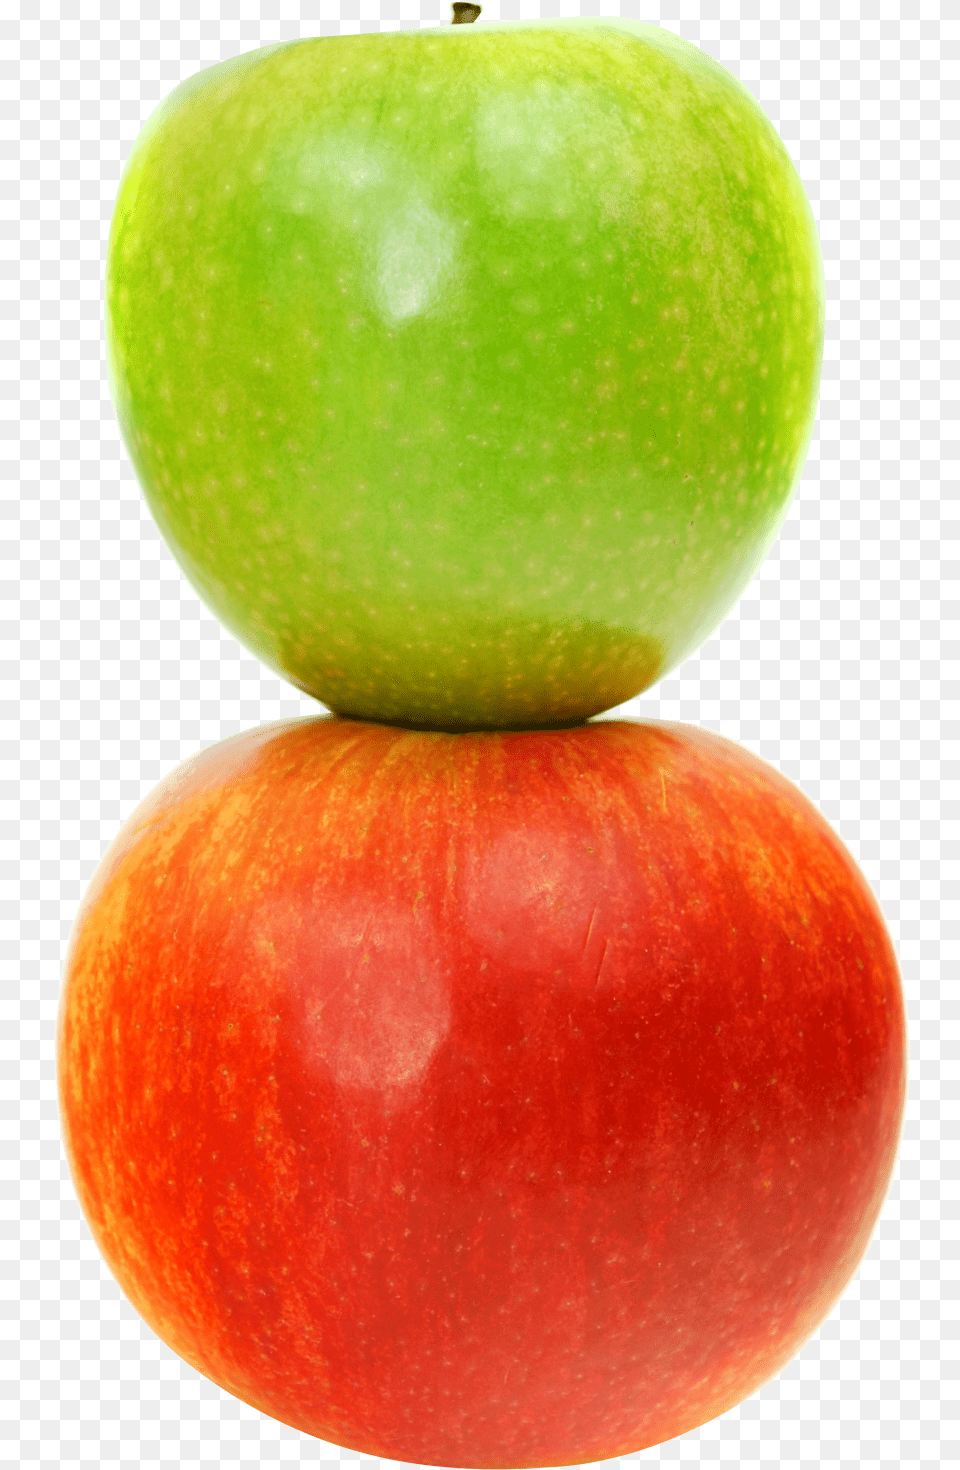 Double Apples Purepng Transparent Cc0 Double Apple, Food, Fruit, Plant, Produce Free Png